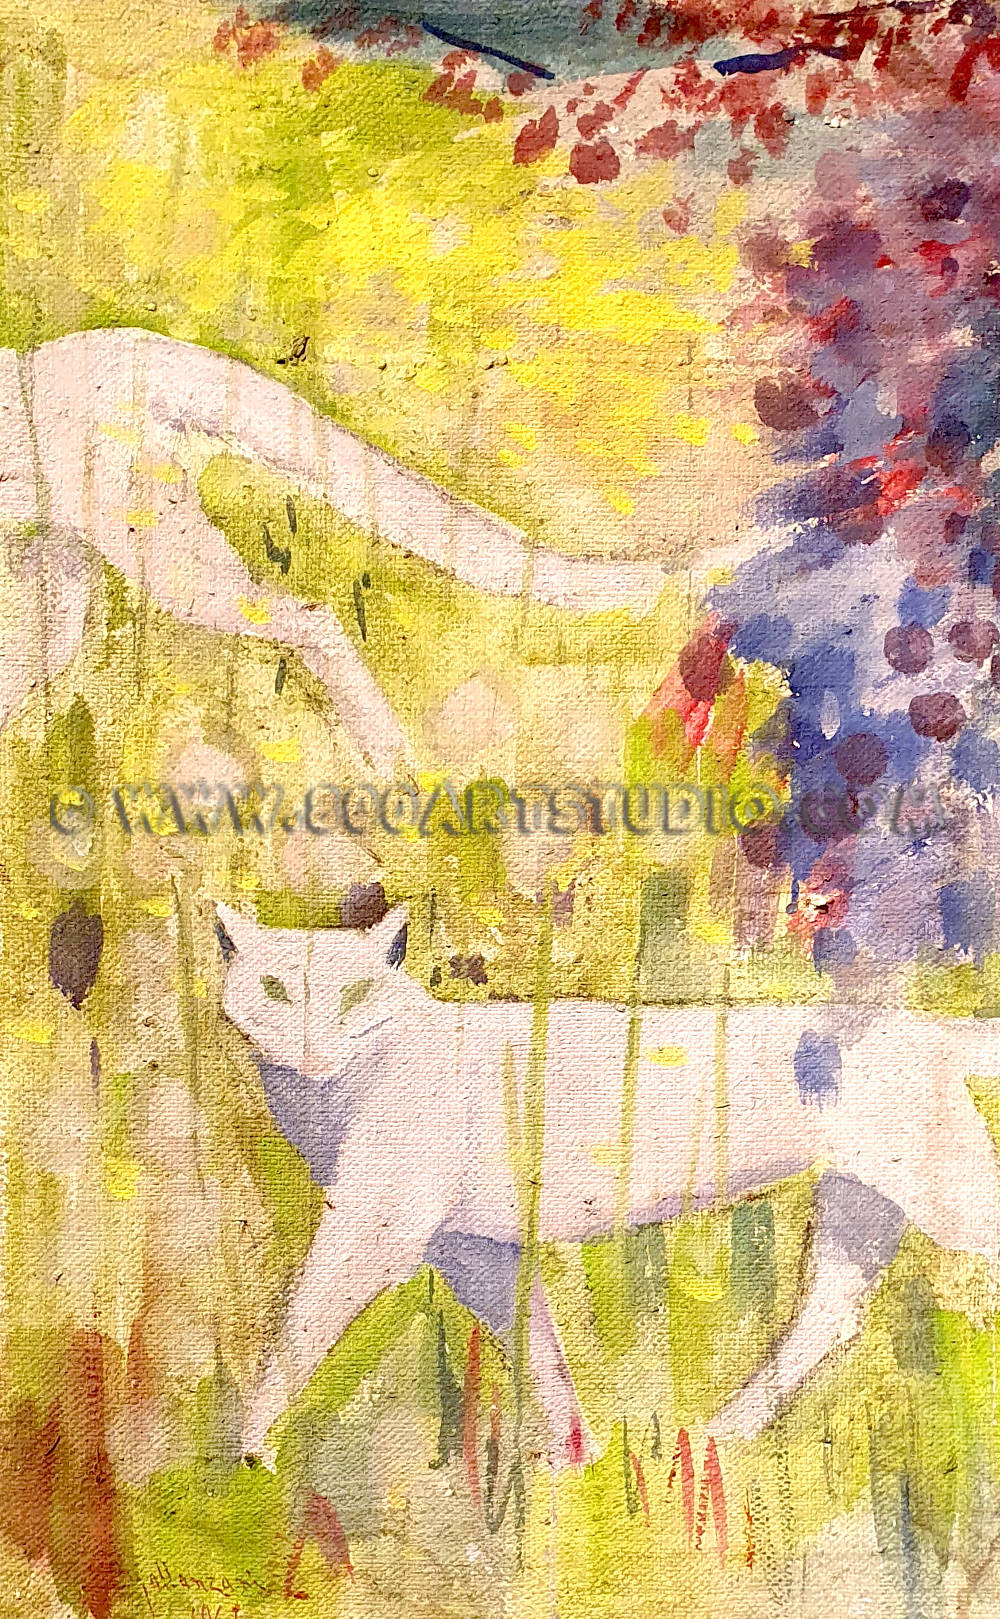 Angiolino Spallanzani - Il gatto bianco